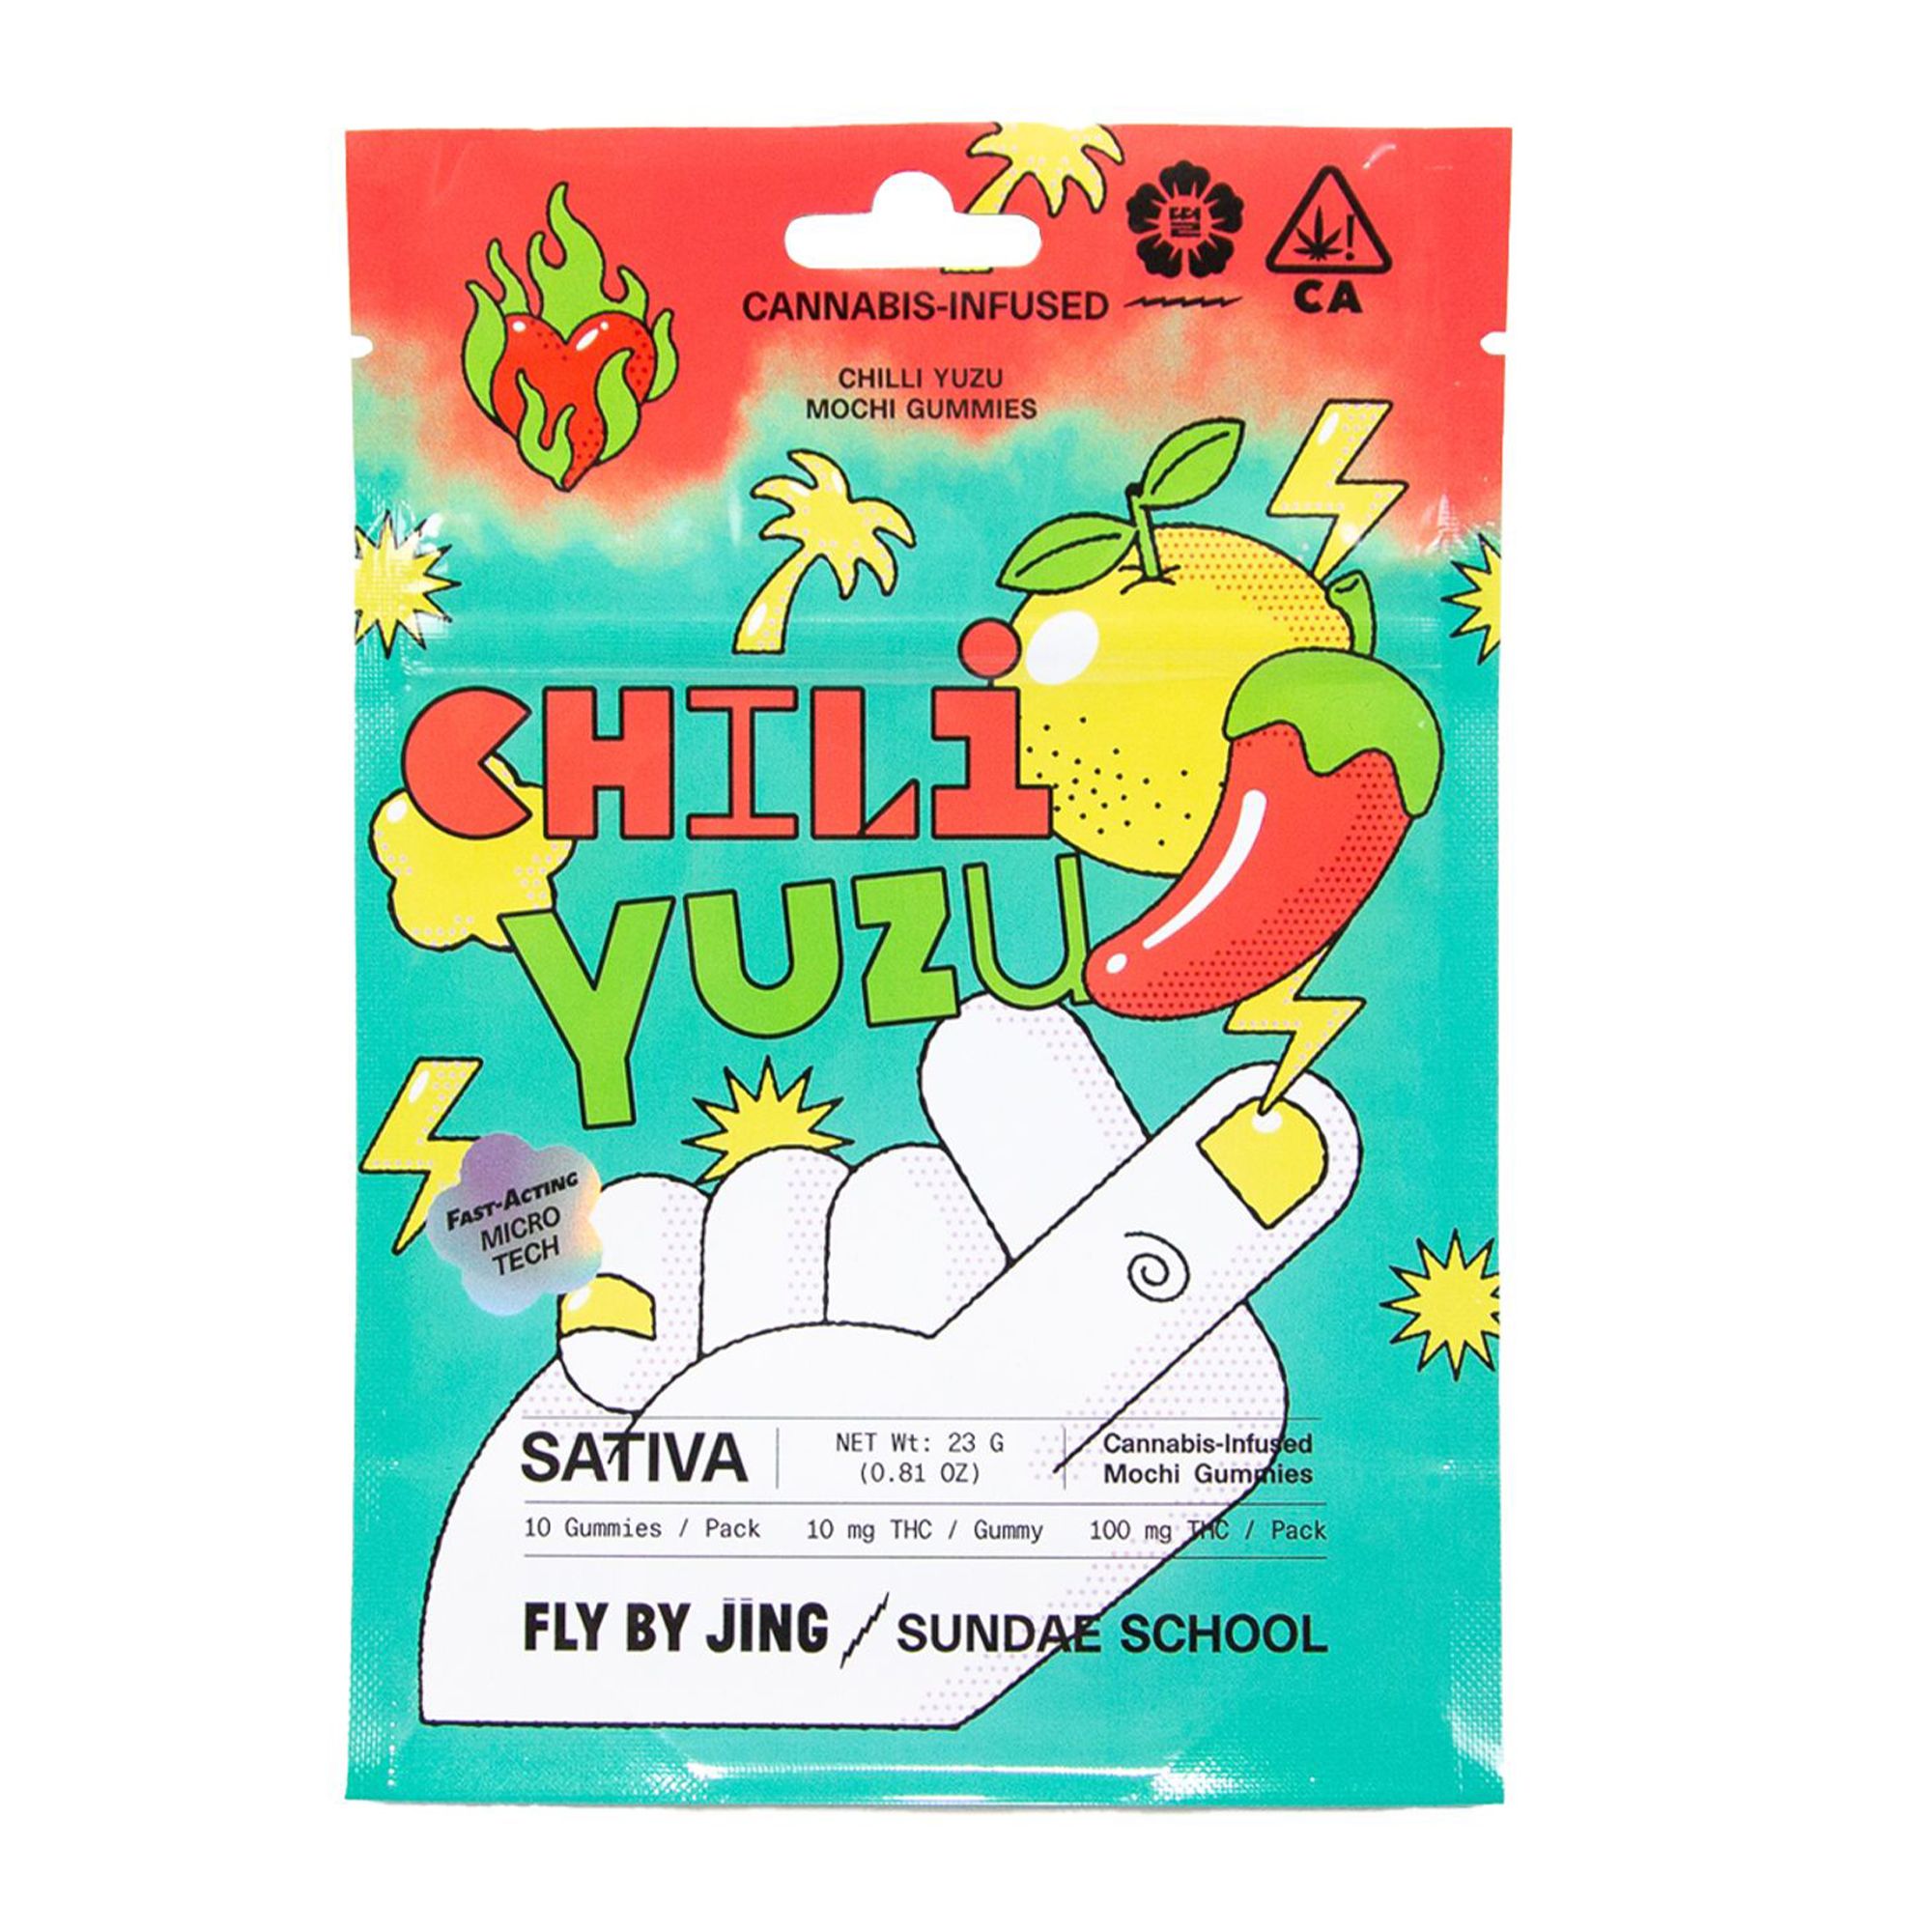 Chili Yuzu Mochi Gummies x Fly by Jing 